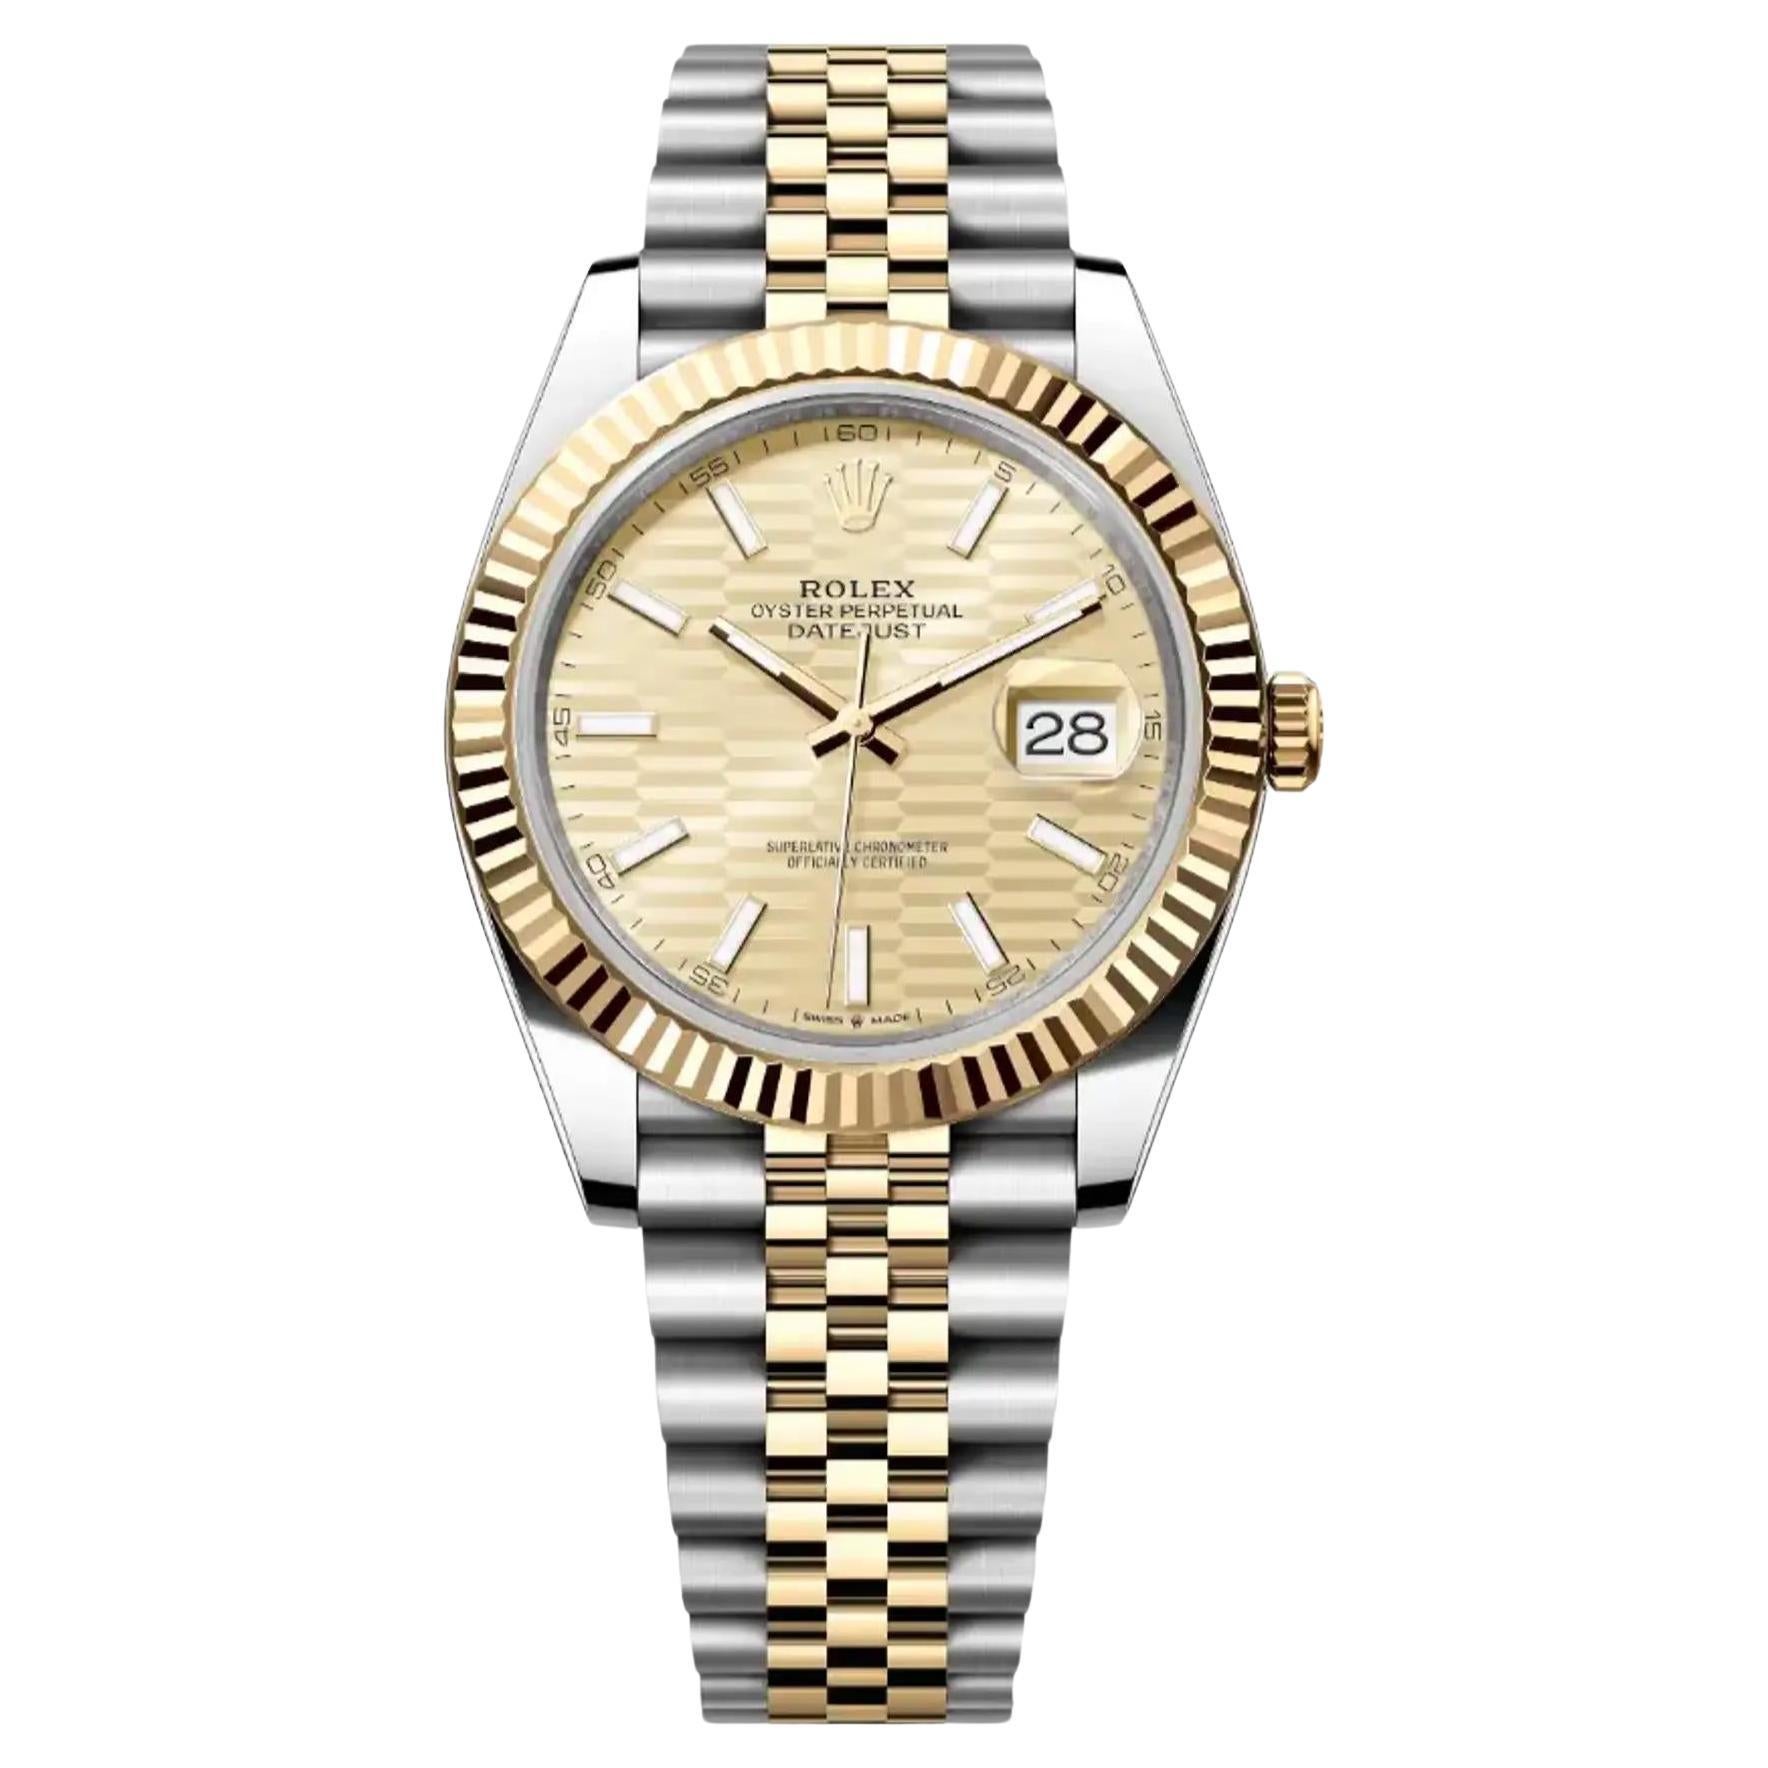 NUEVO Reloj Rolex Datejust Acero Oro Amarillo 18K Esfera Motivo Champaña 126333